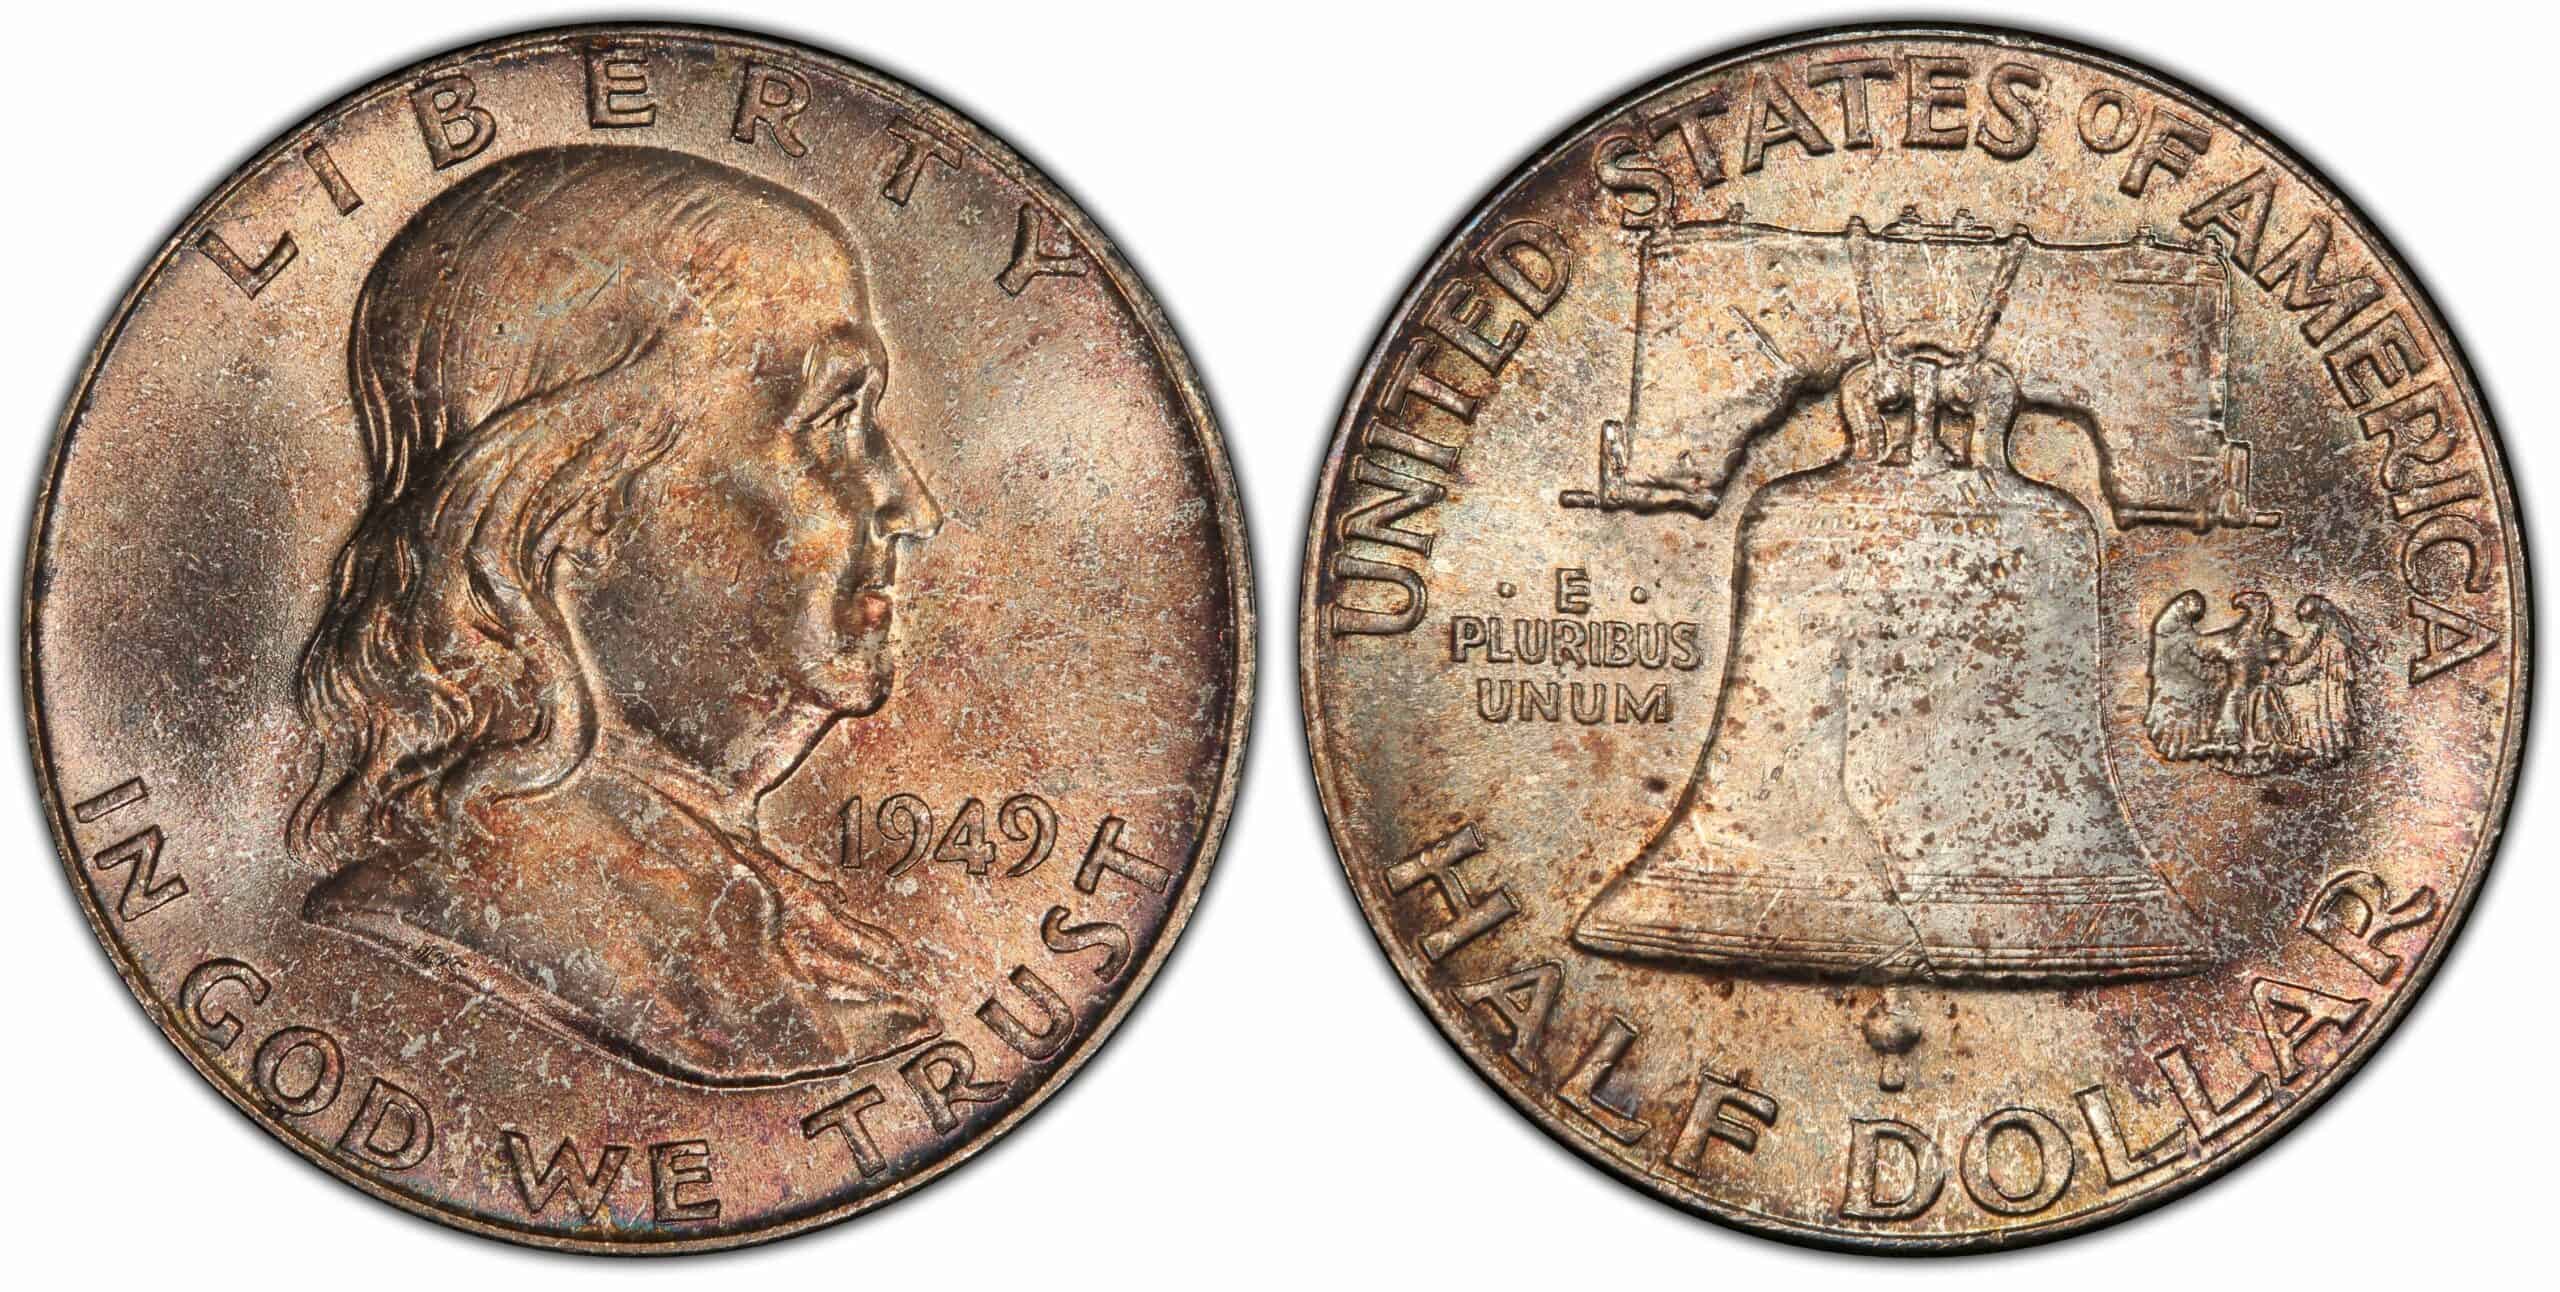 1949 No Mint Mark Half Dollar Value